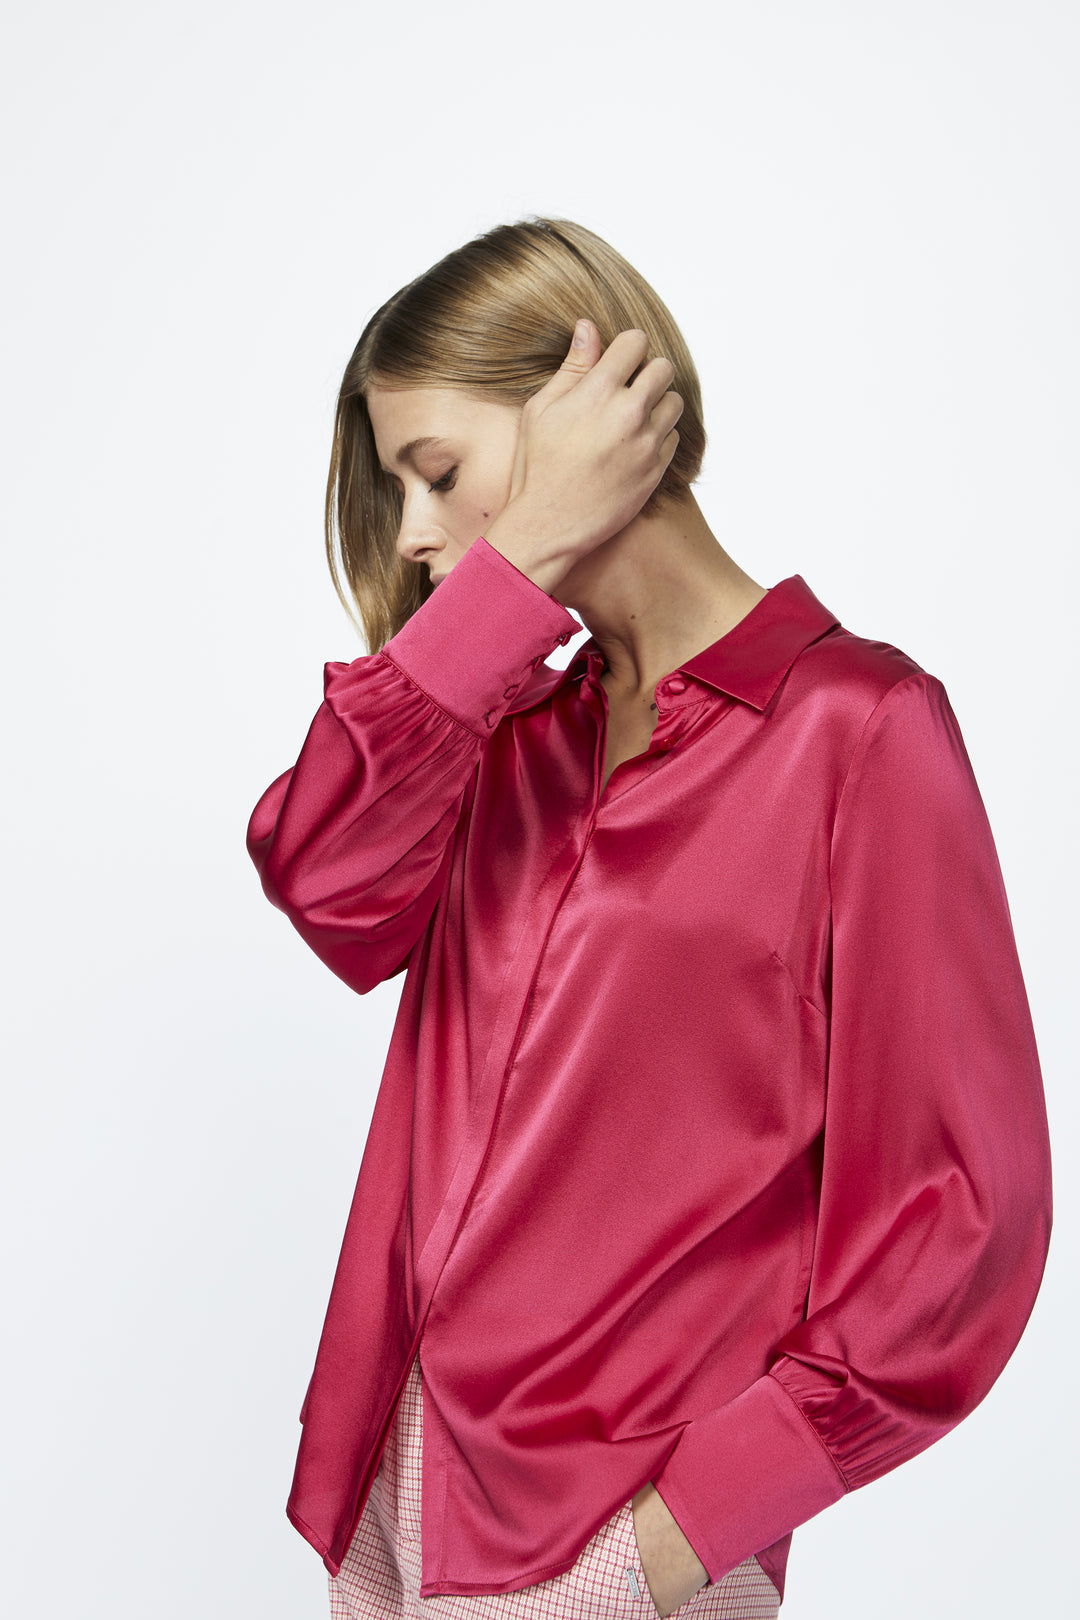 hot pink zijde blouse - xandres - - grote maten - dameskleding - kledingwinkel - herent - leuven